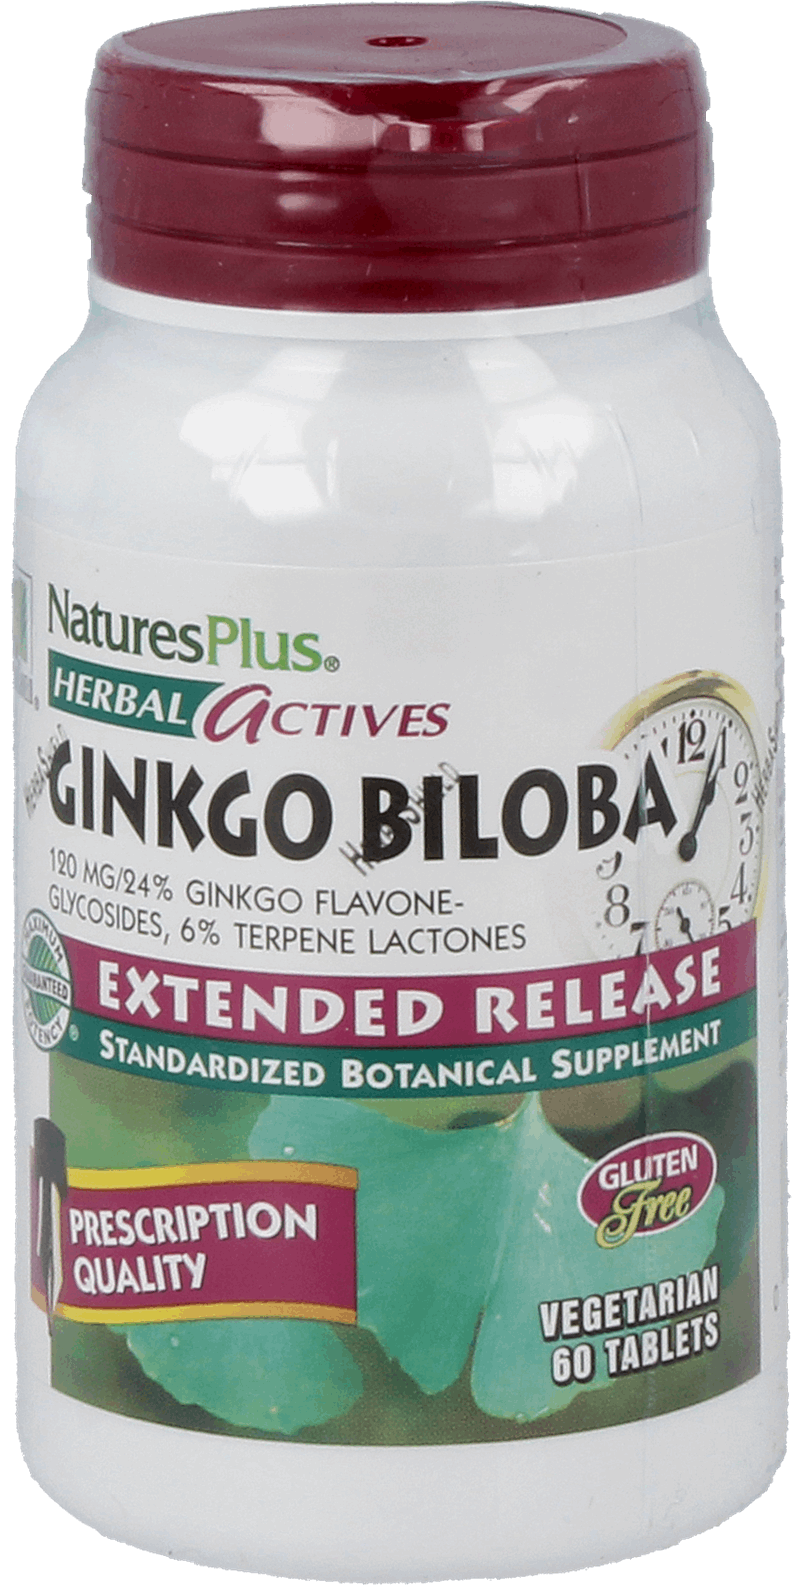 Ginkgo Biloba 120 mg 